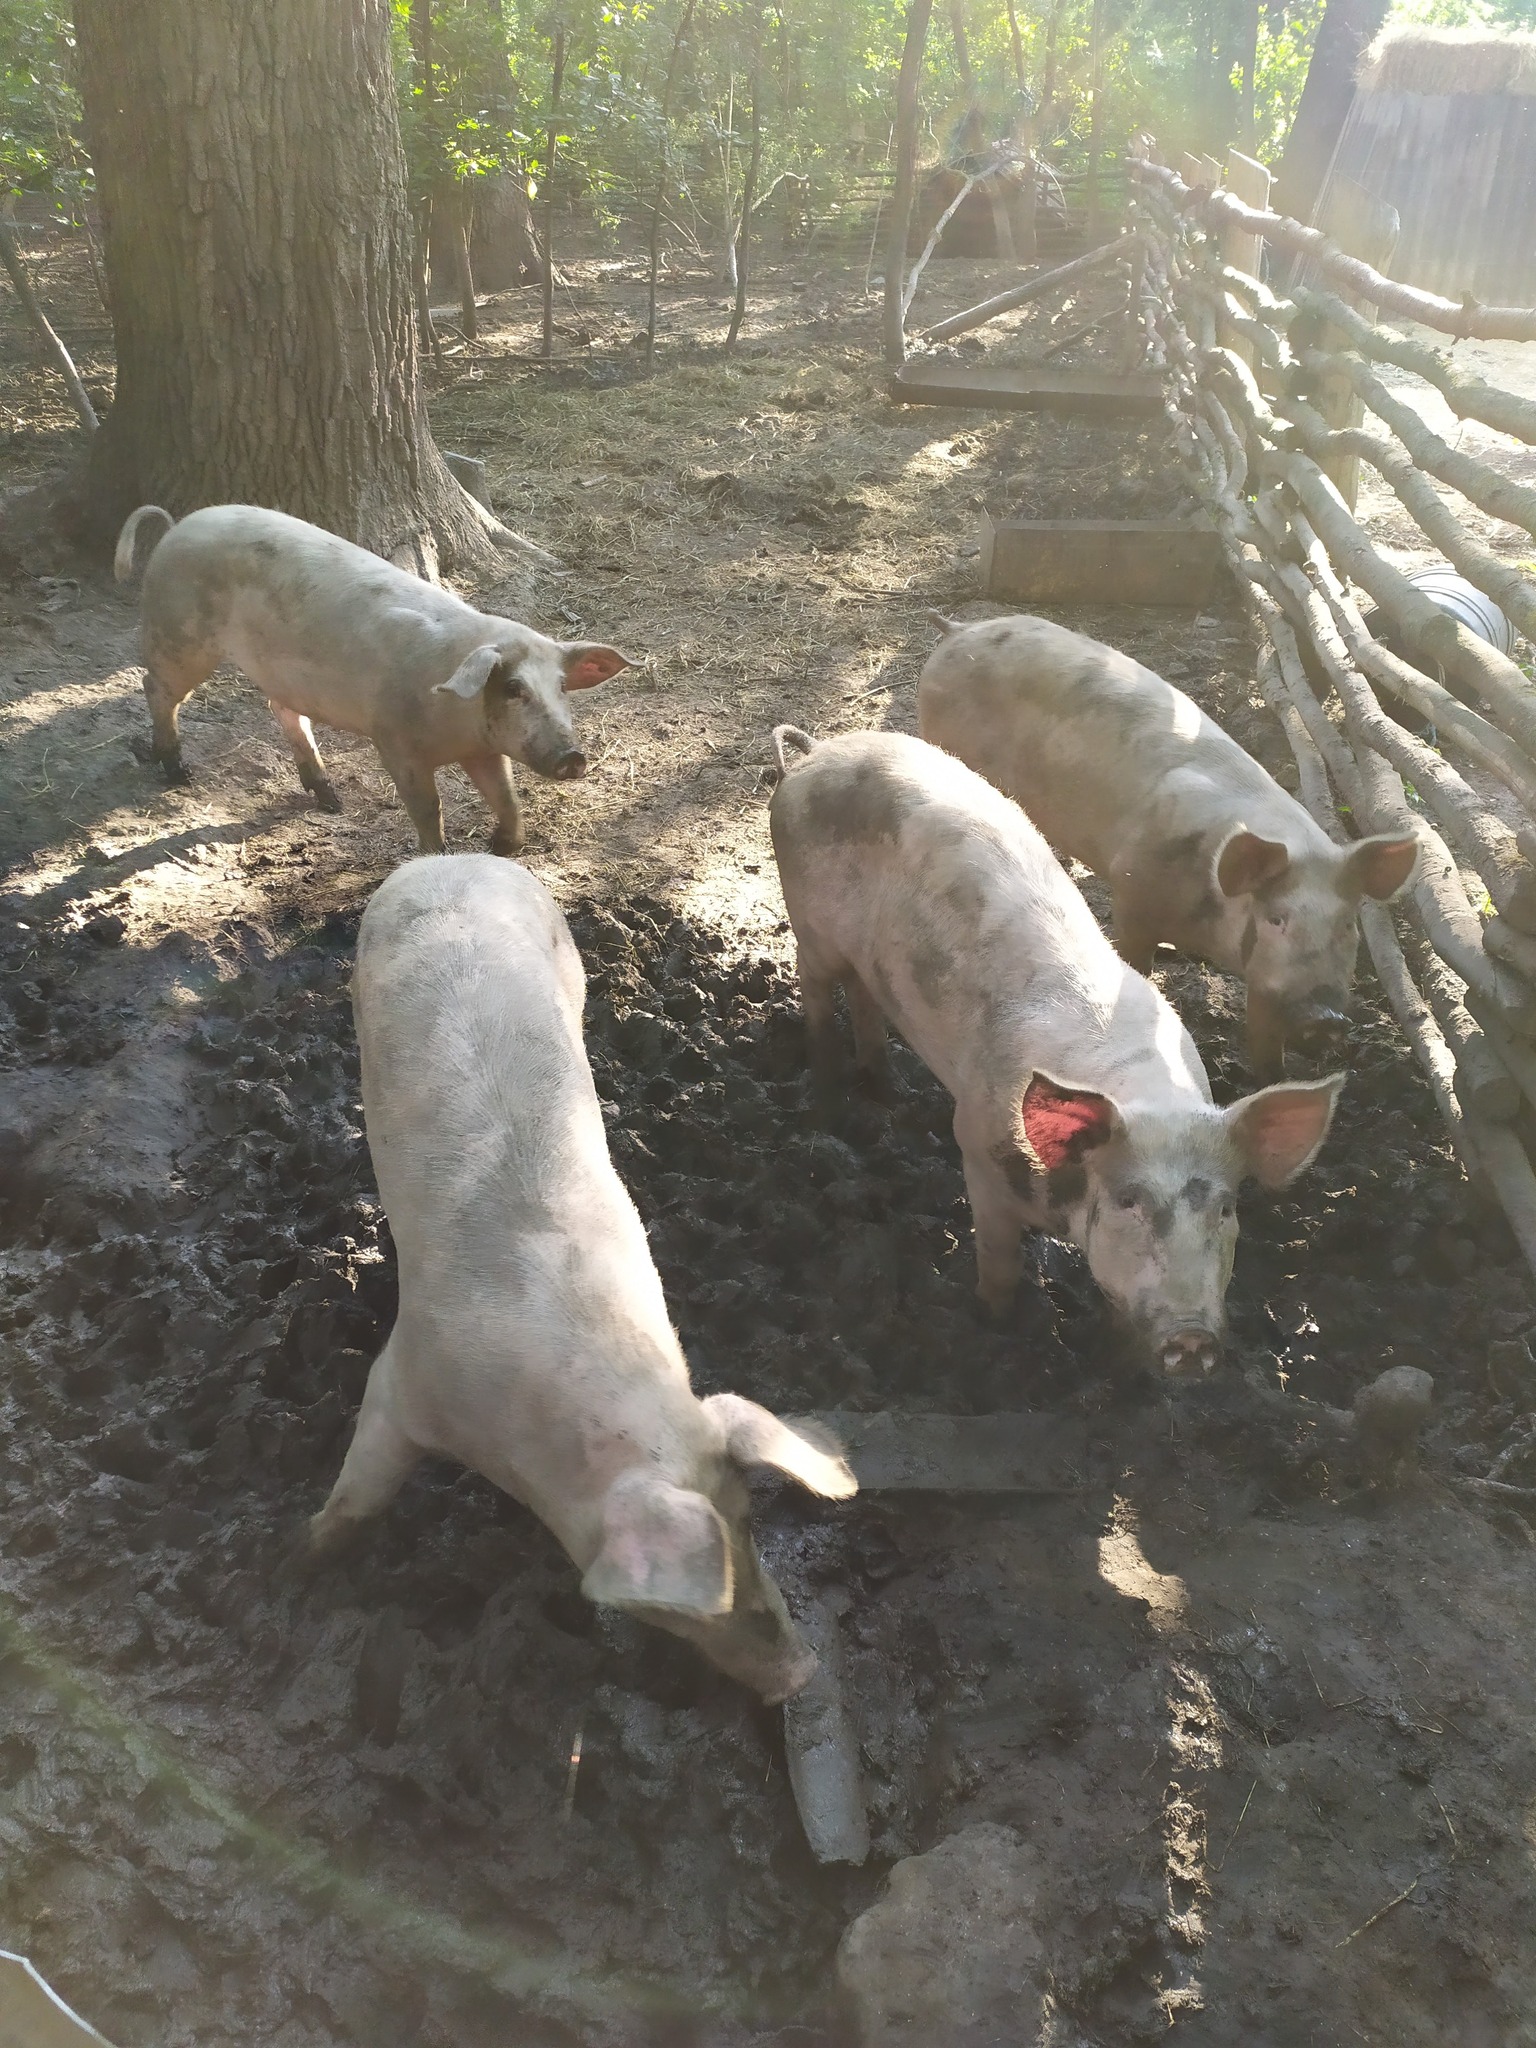 (ФОТО) Житель Дрокии выращивает свиней в лесу. Ему выписали штраф